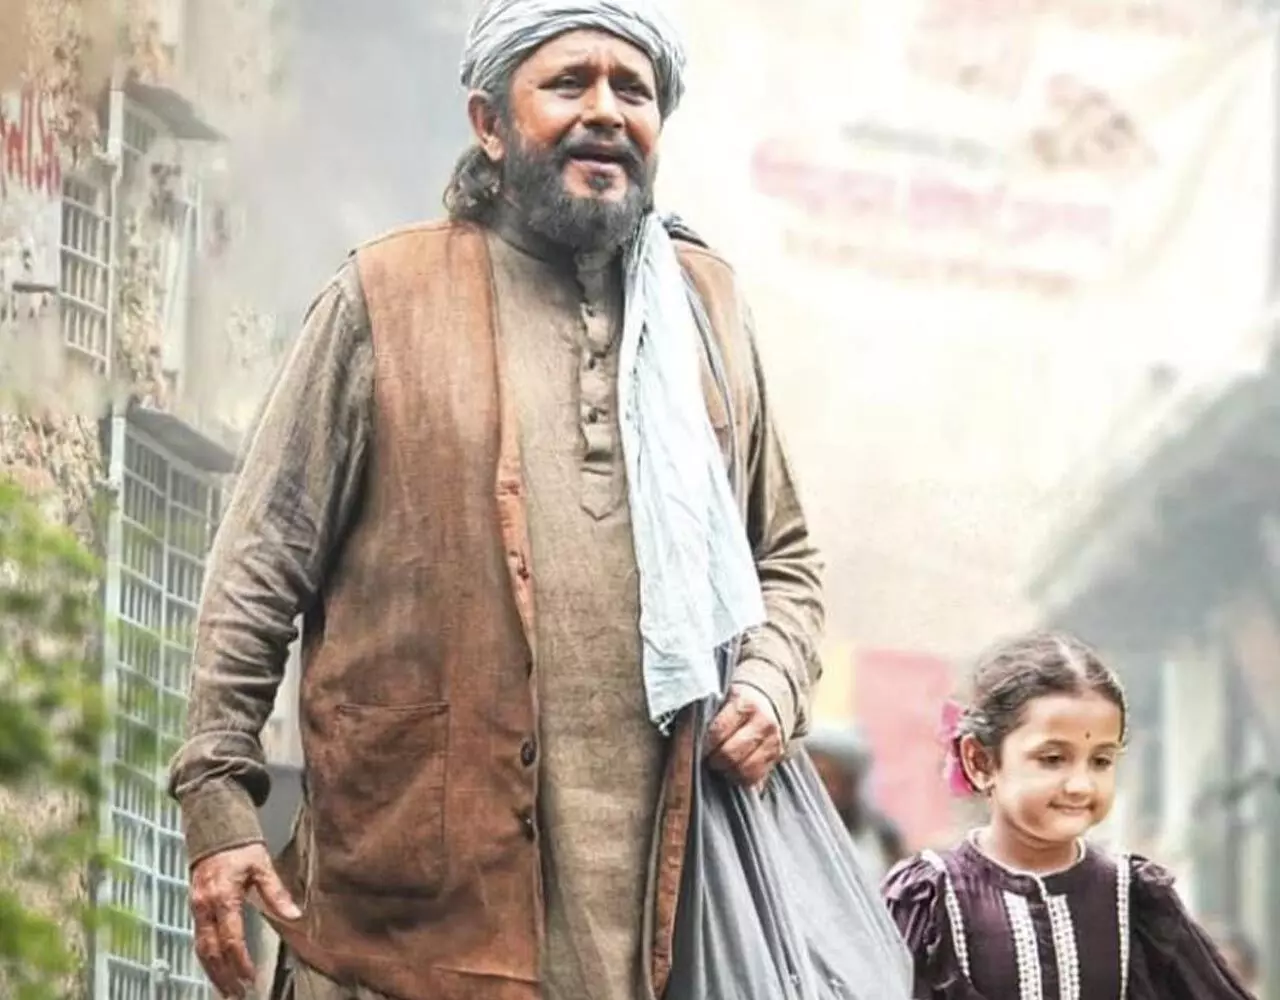 Kabuliwala First Poster: मिथुन चक्रवर्ती की फिल्म काबुलीवाला का पहला पोस्टर रिलीज, झोला लटकाकर अफगानी व्यक्ति के लुक में आए नजर...